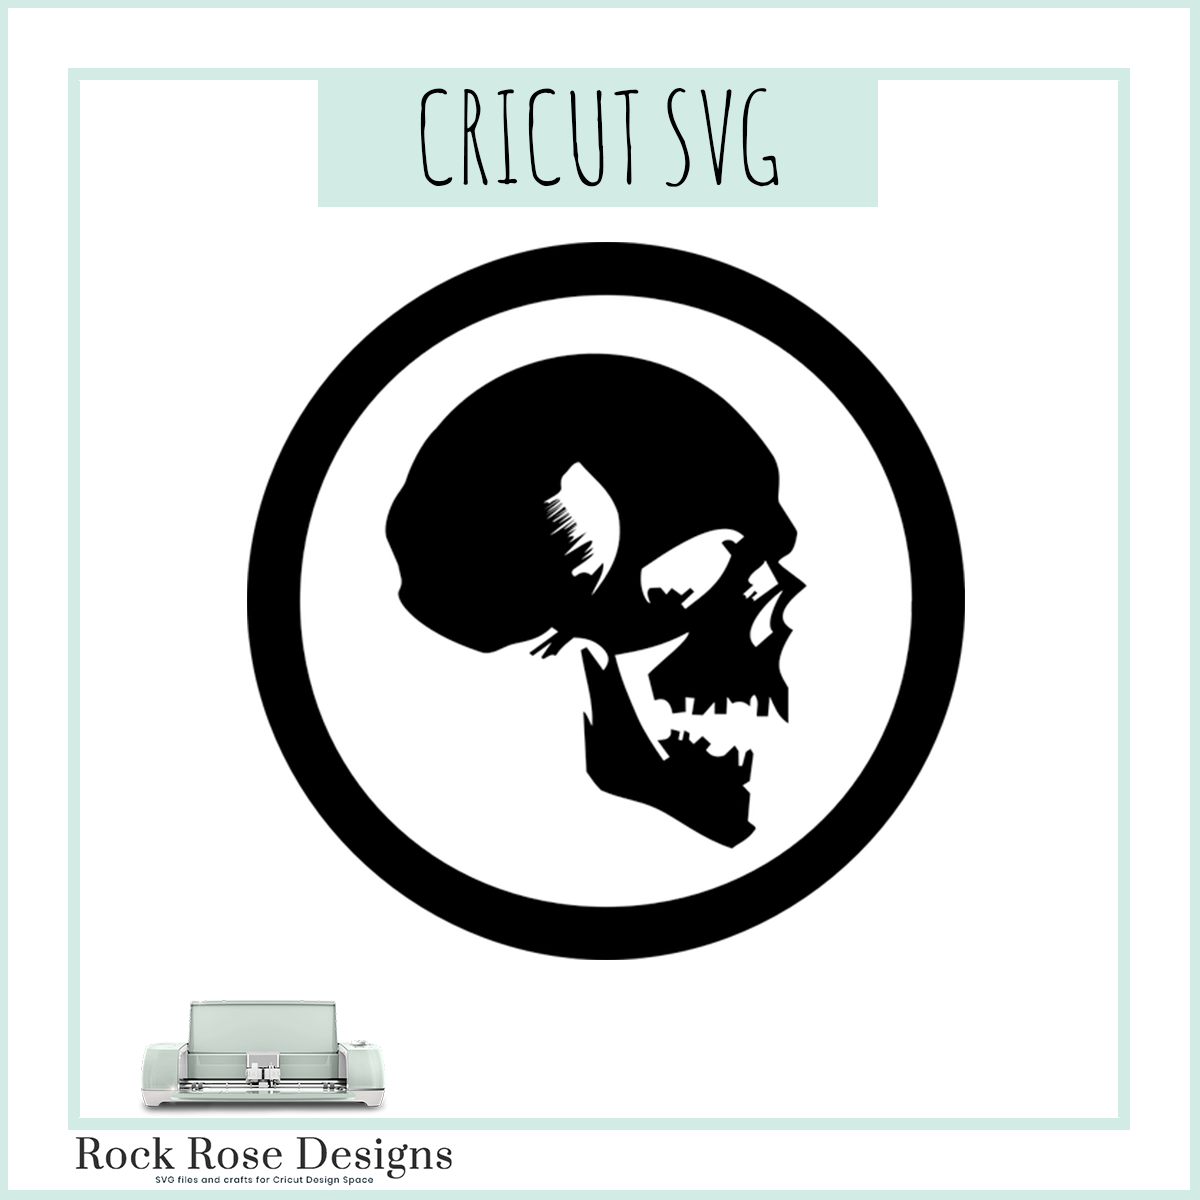 Download Skull Svg Cut File Rock Rose Designs Rock Rose Designs